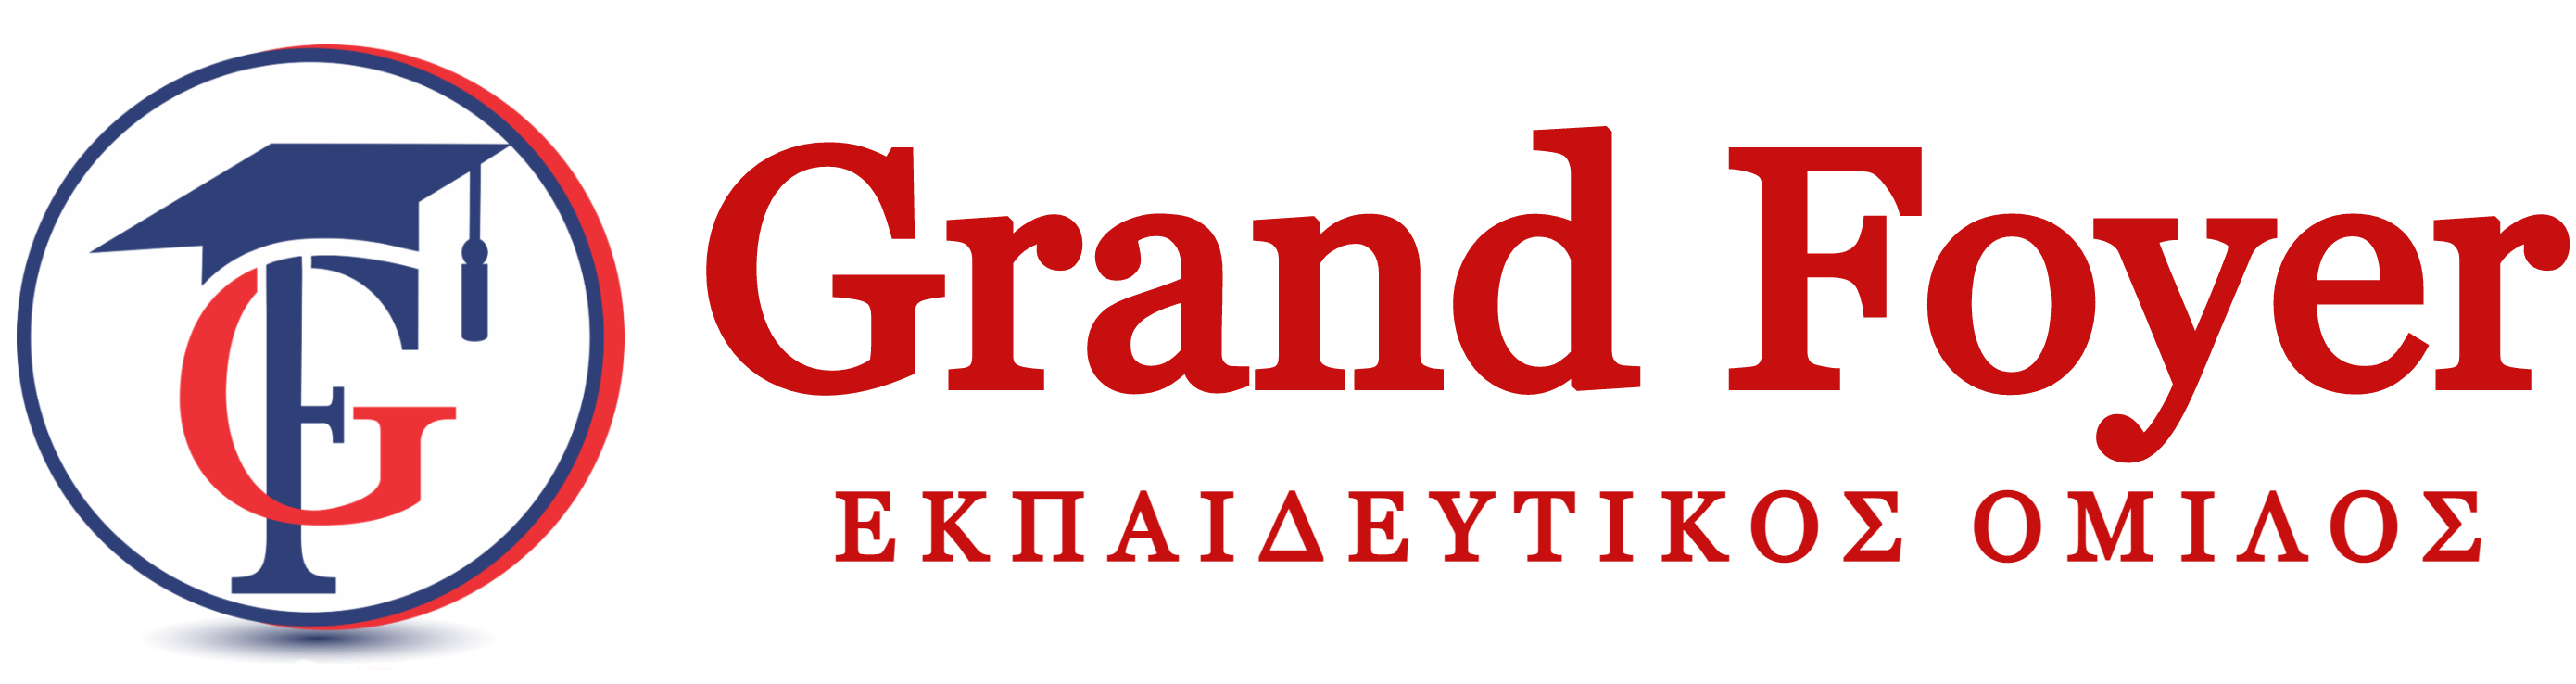 Grand Foyer Logo